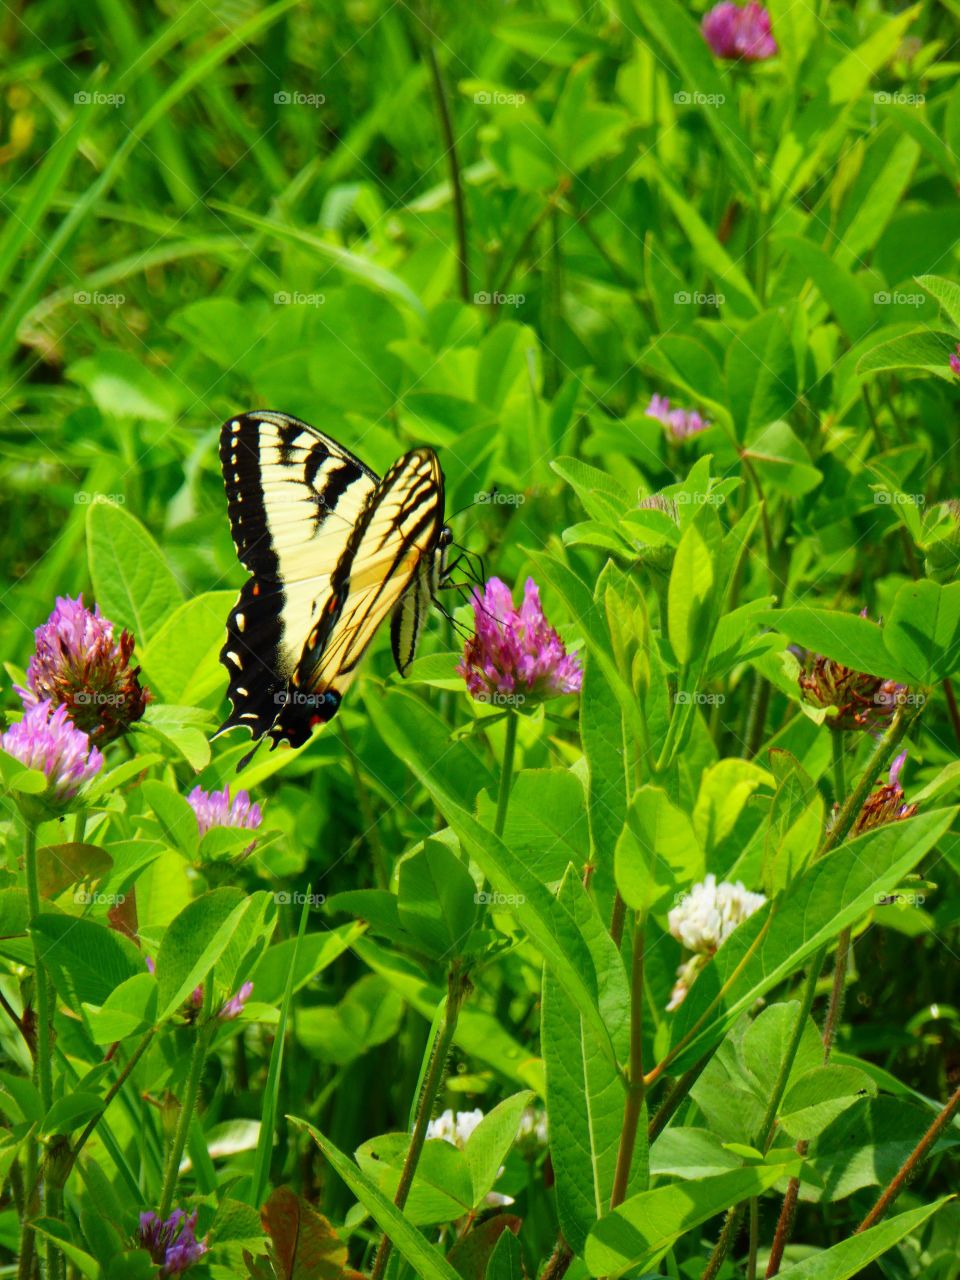 Butterfly in a field 8